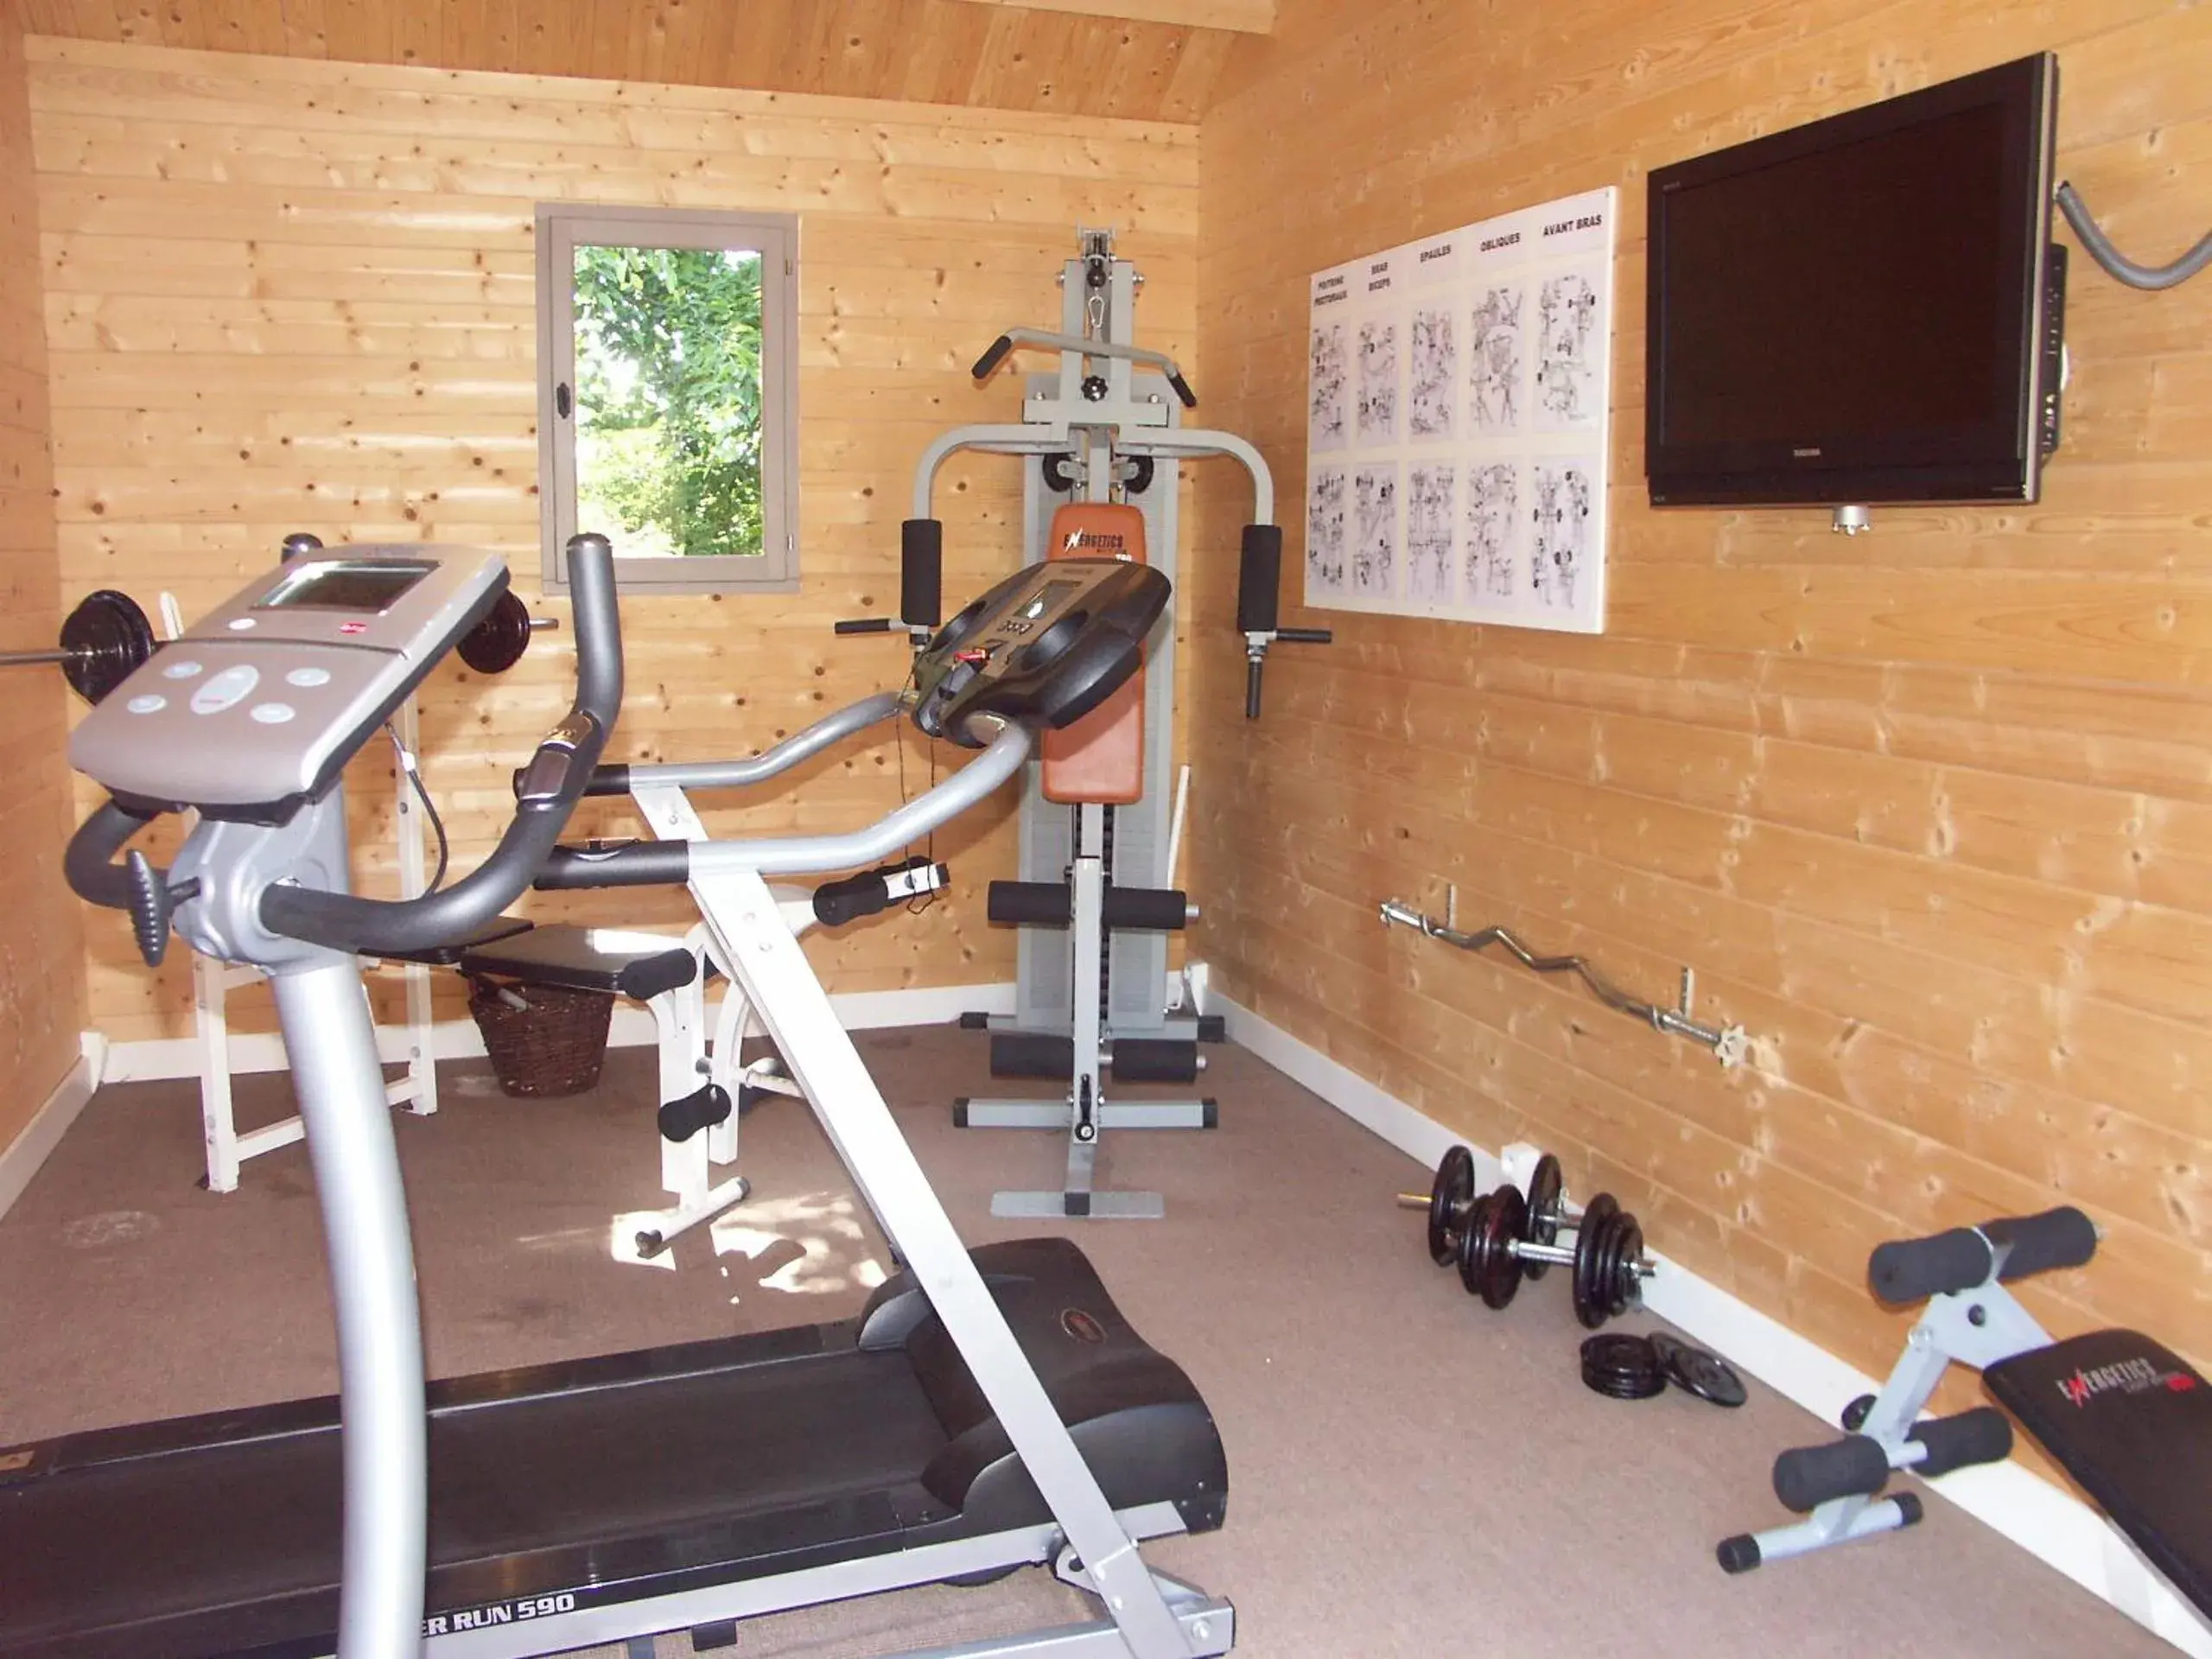 Fitness centre/facilities, Fitness Center/Facilities in Hotel Nuit Et Jour - La Maison de Lucile